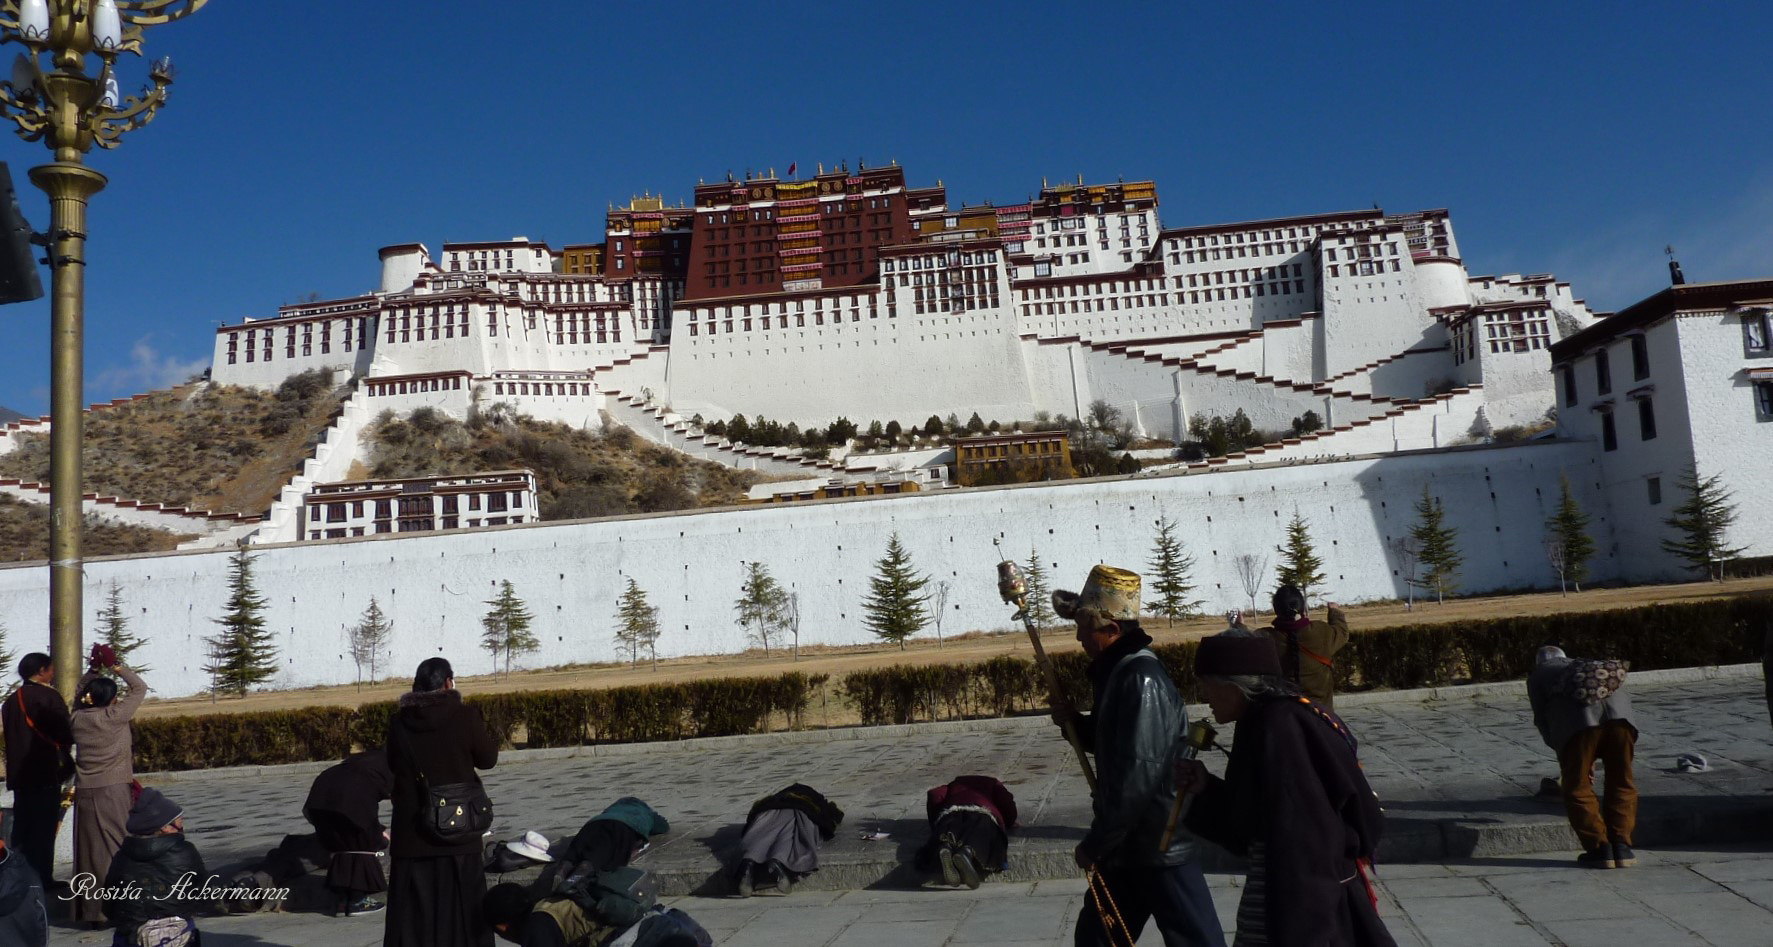 Panasonic DMC-ZS3 sample photo. Lhasa tibet photography